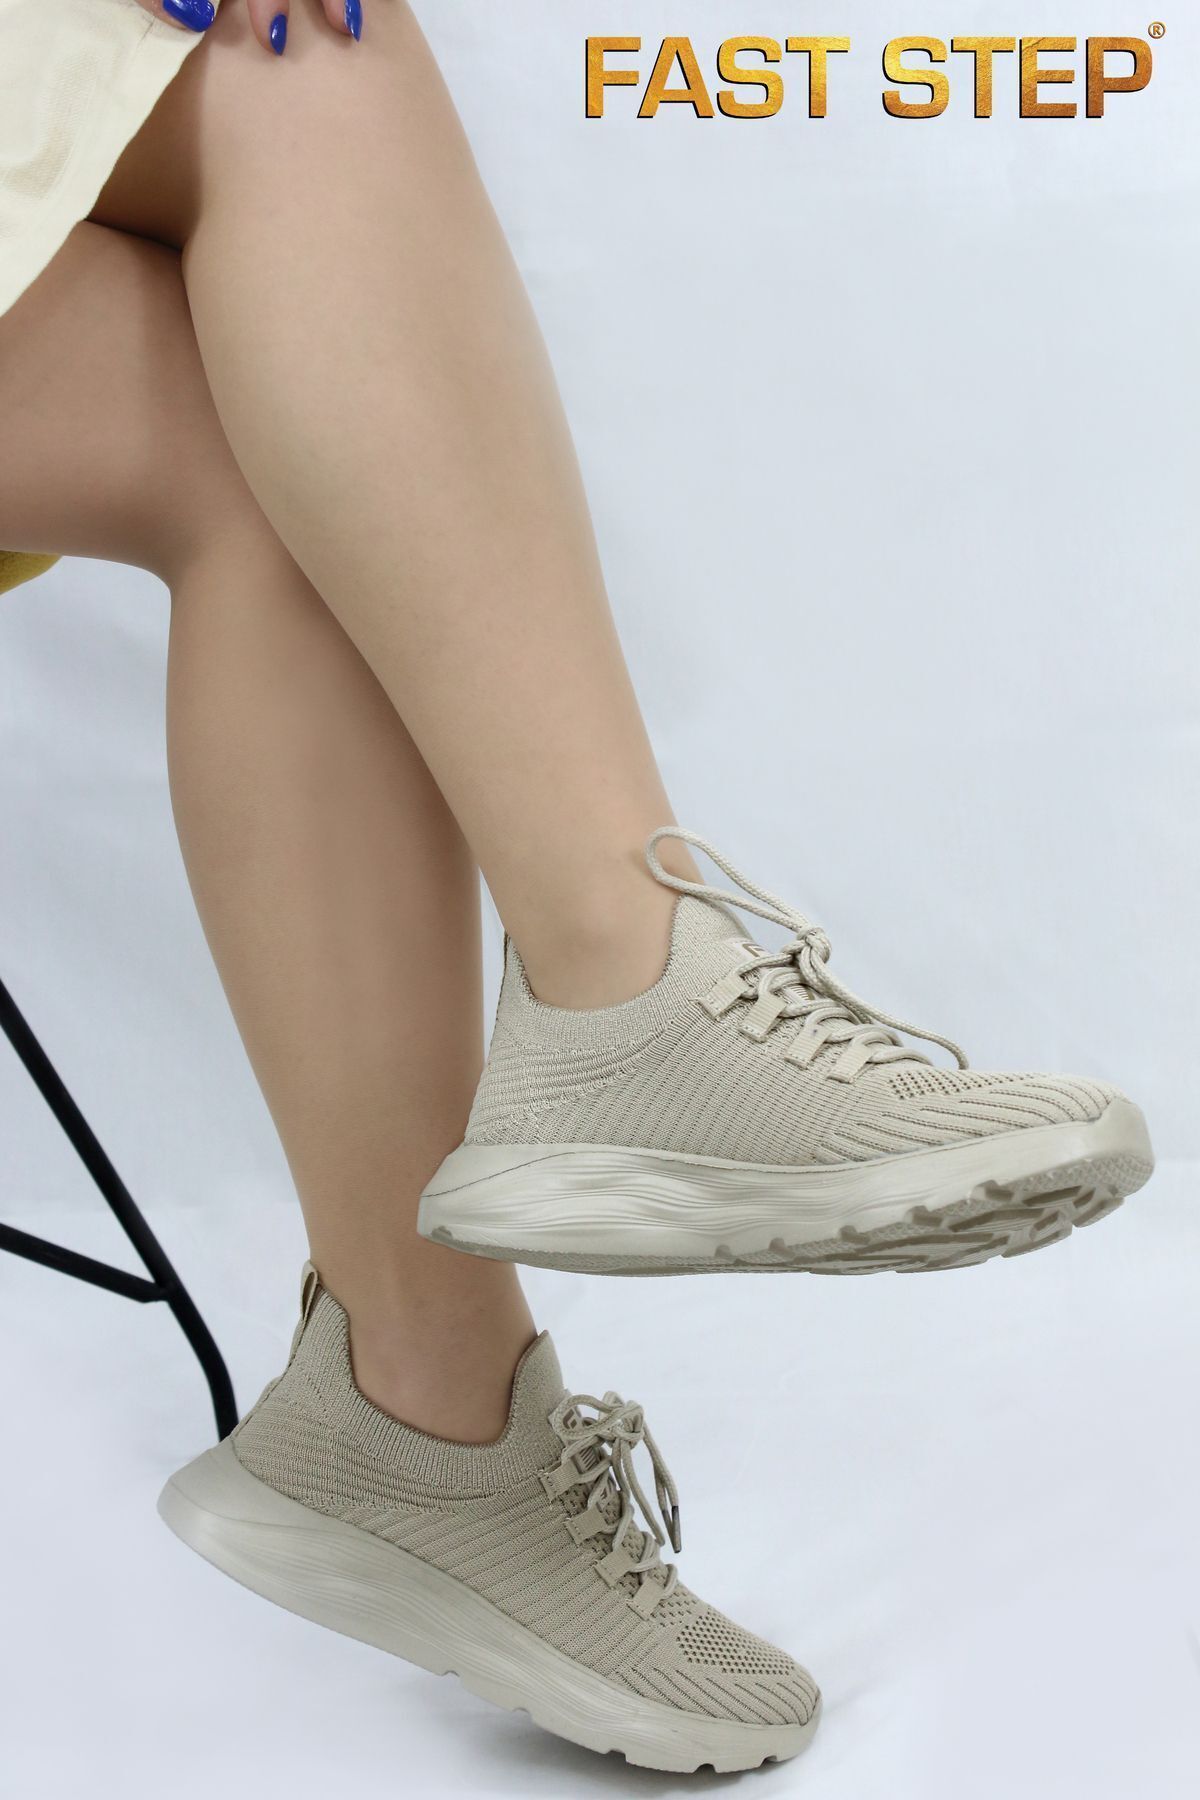 Fast Step Unisex Anatomik Taban Günlük Garantili Yürüyüş Koşu Sneaker Spor Ayakkabı 925xa68